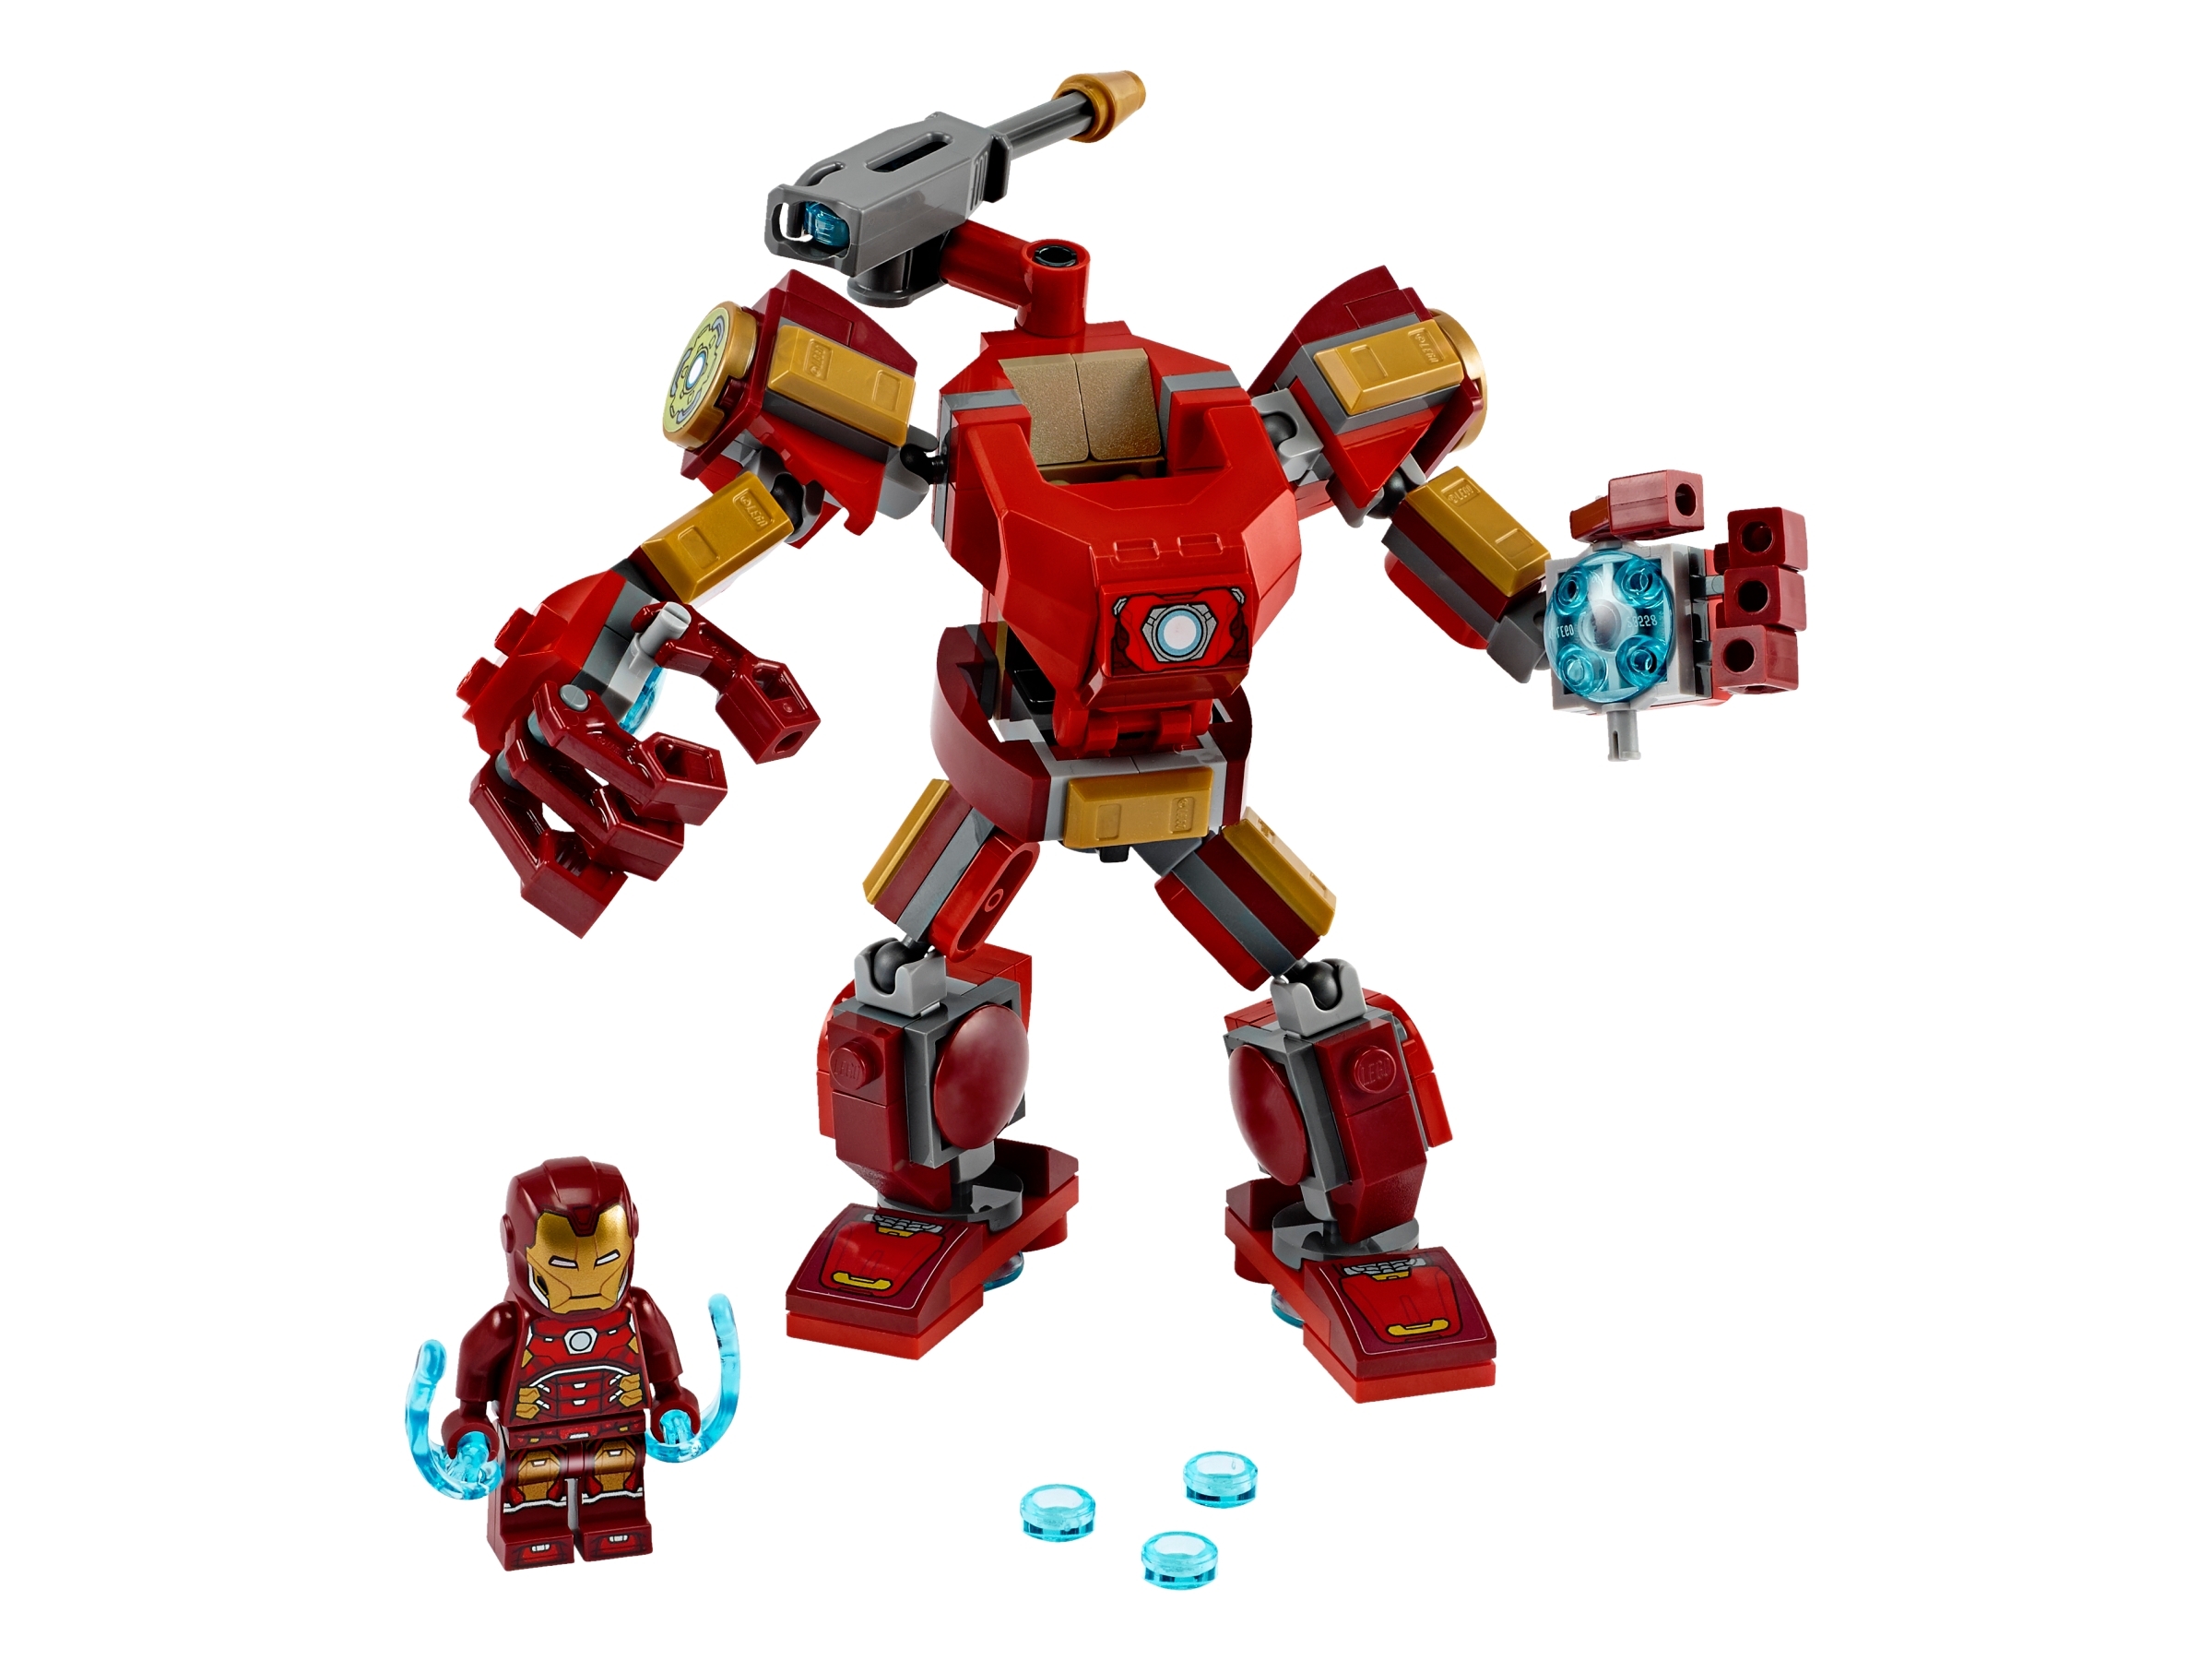 lego iron man all minifigures